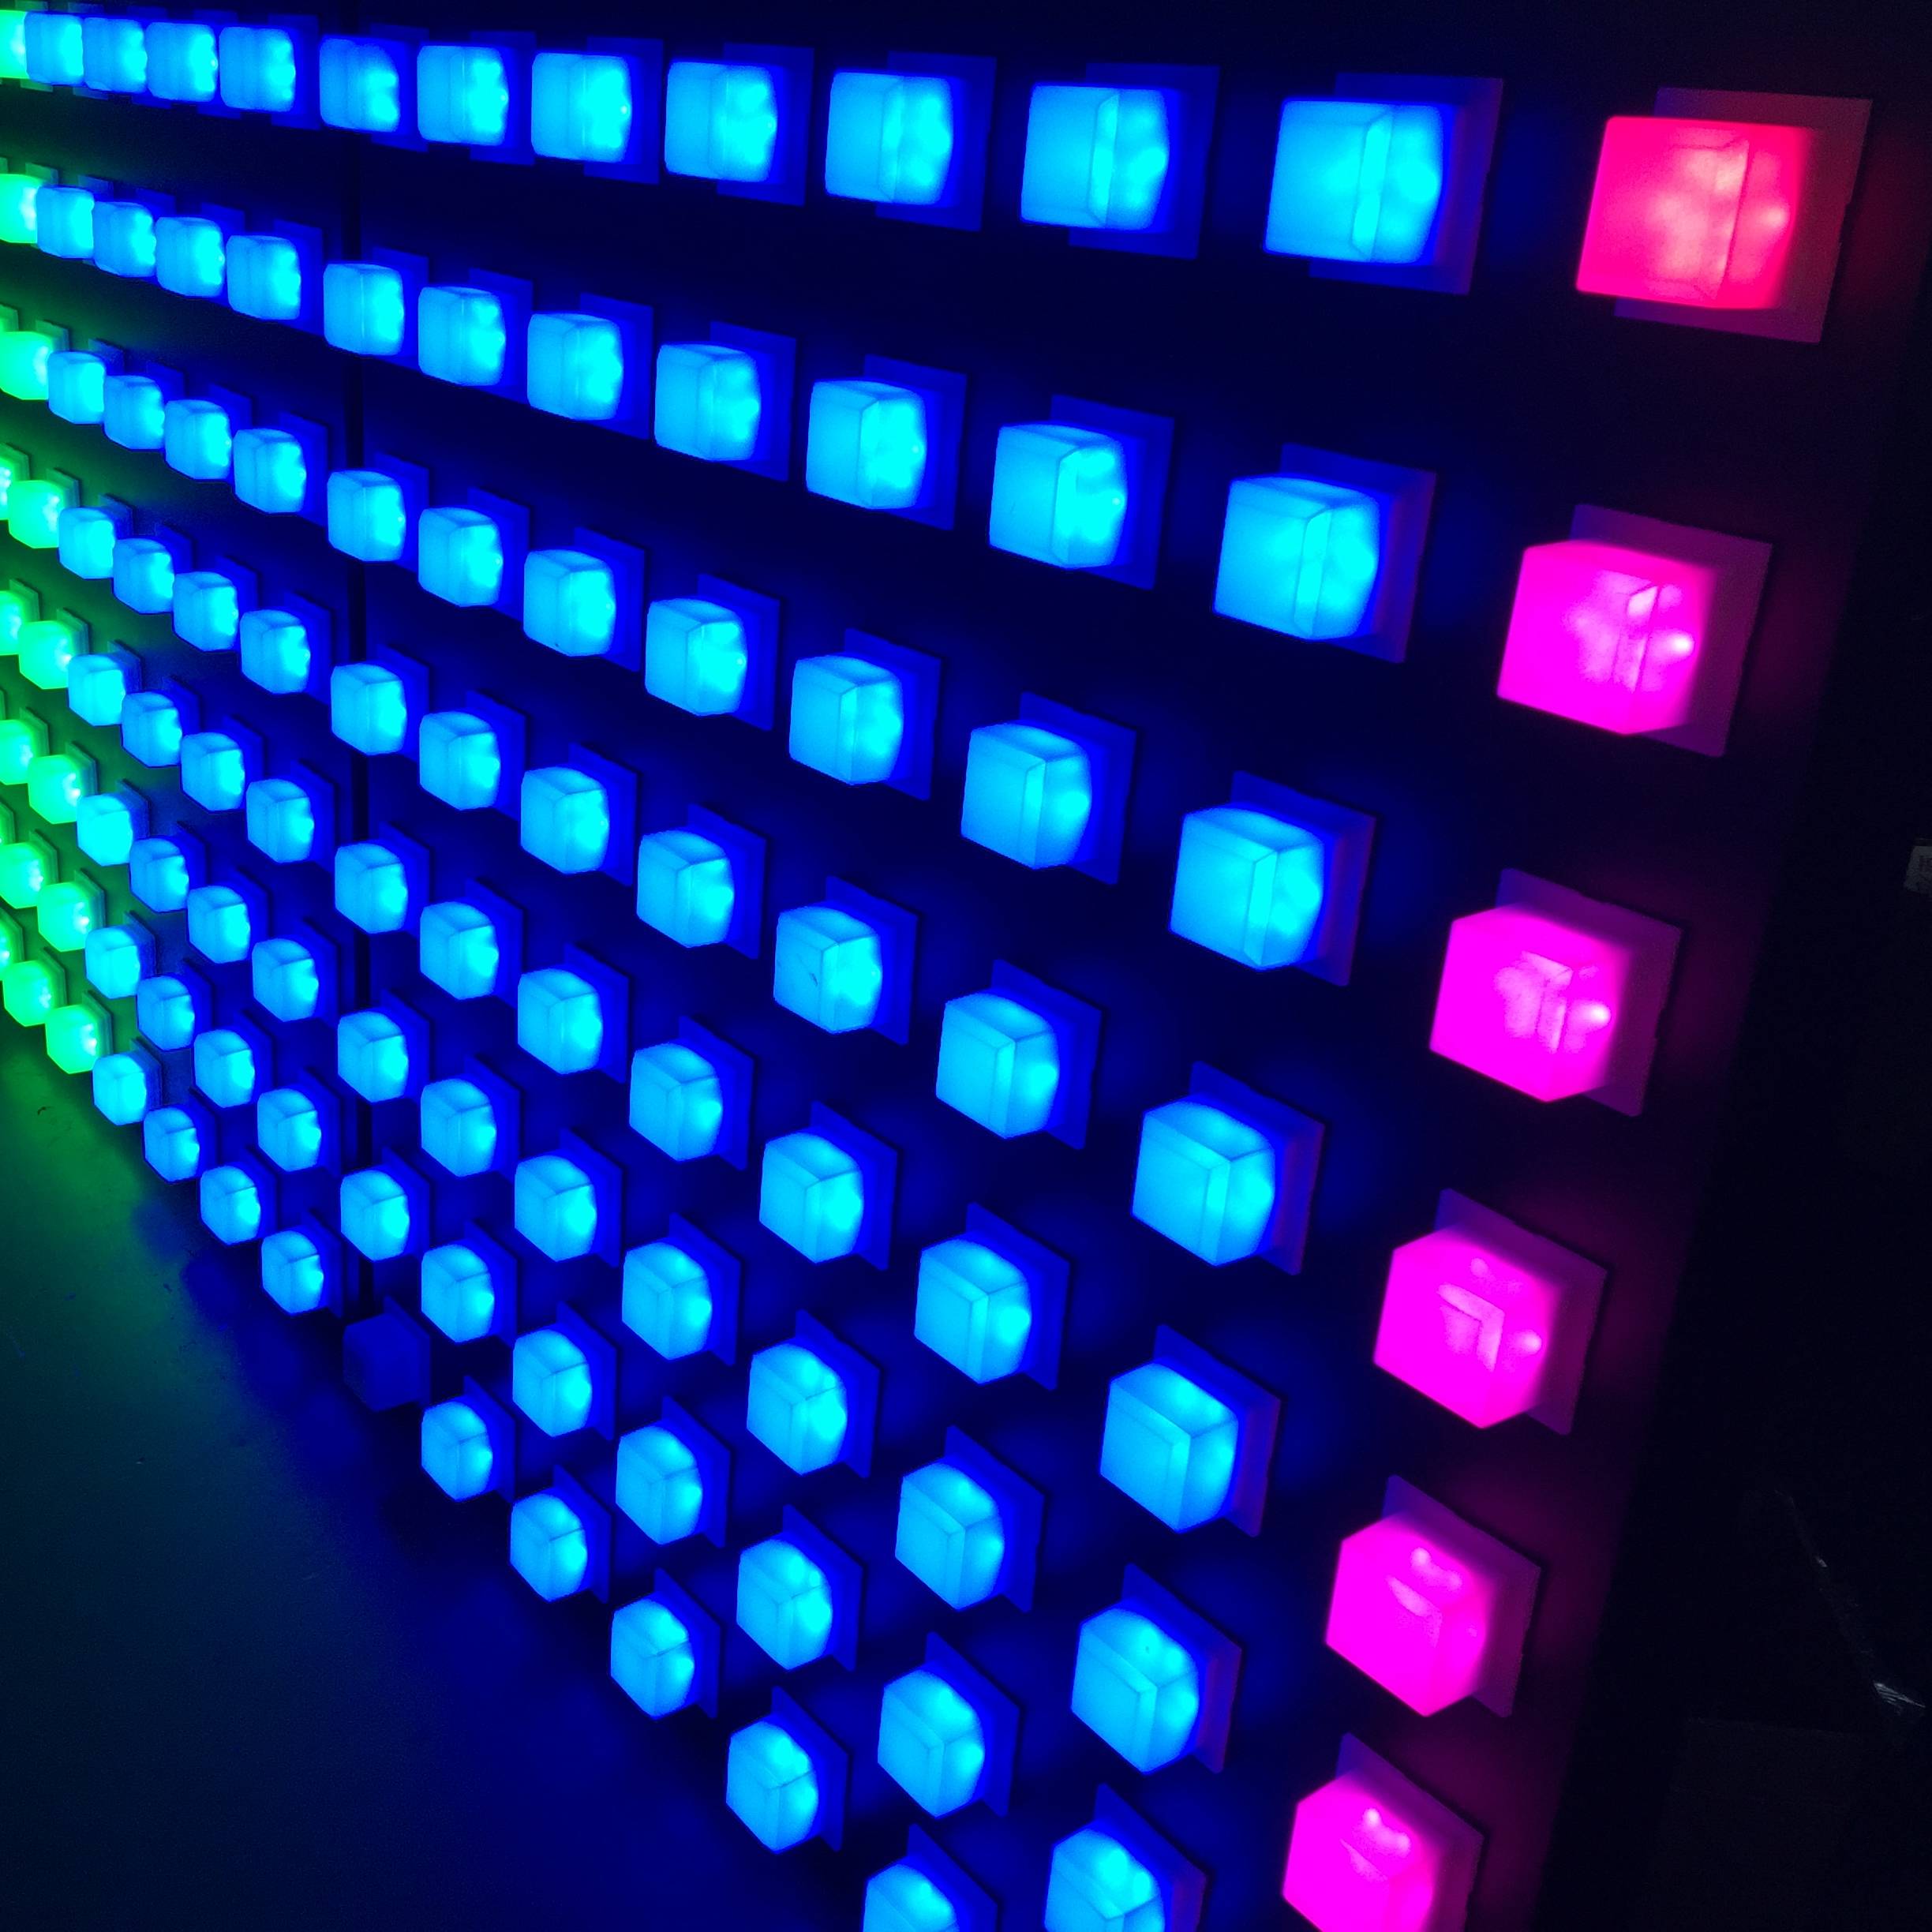 RGB முழு வண்ண SMD 5050 தலைமையிலான நிலைகள் விளக்குகள் பிக்சல் ஒளி DVI வீடியோ காட்சிகள் திரை